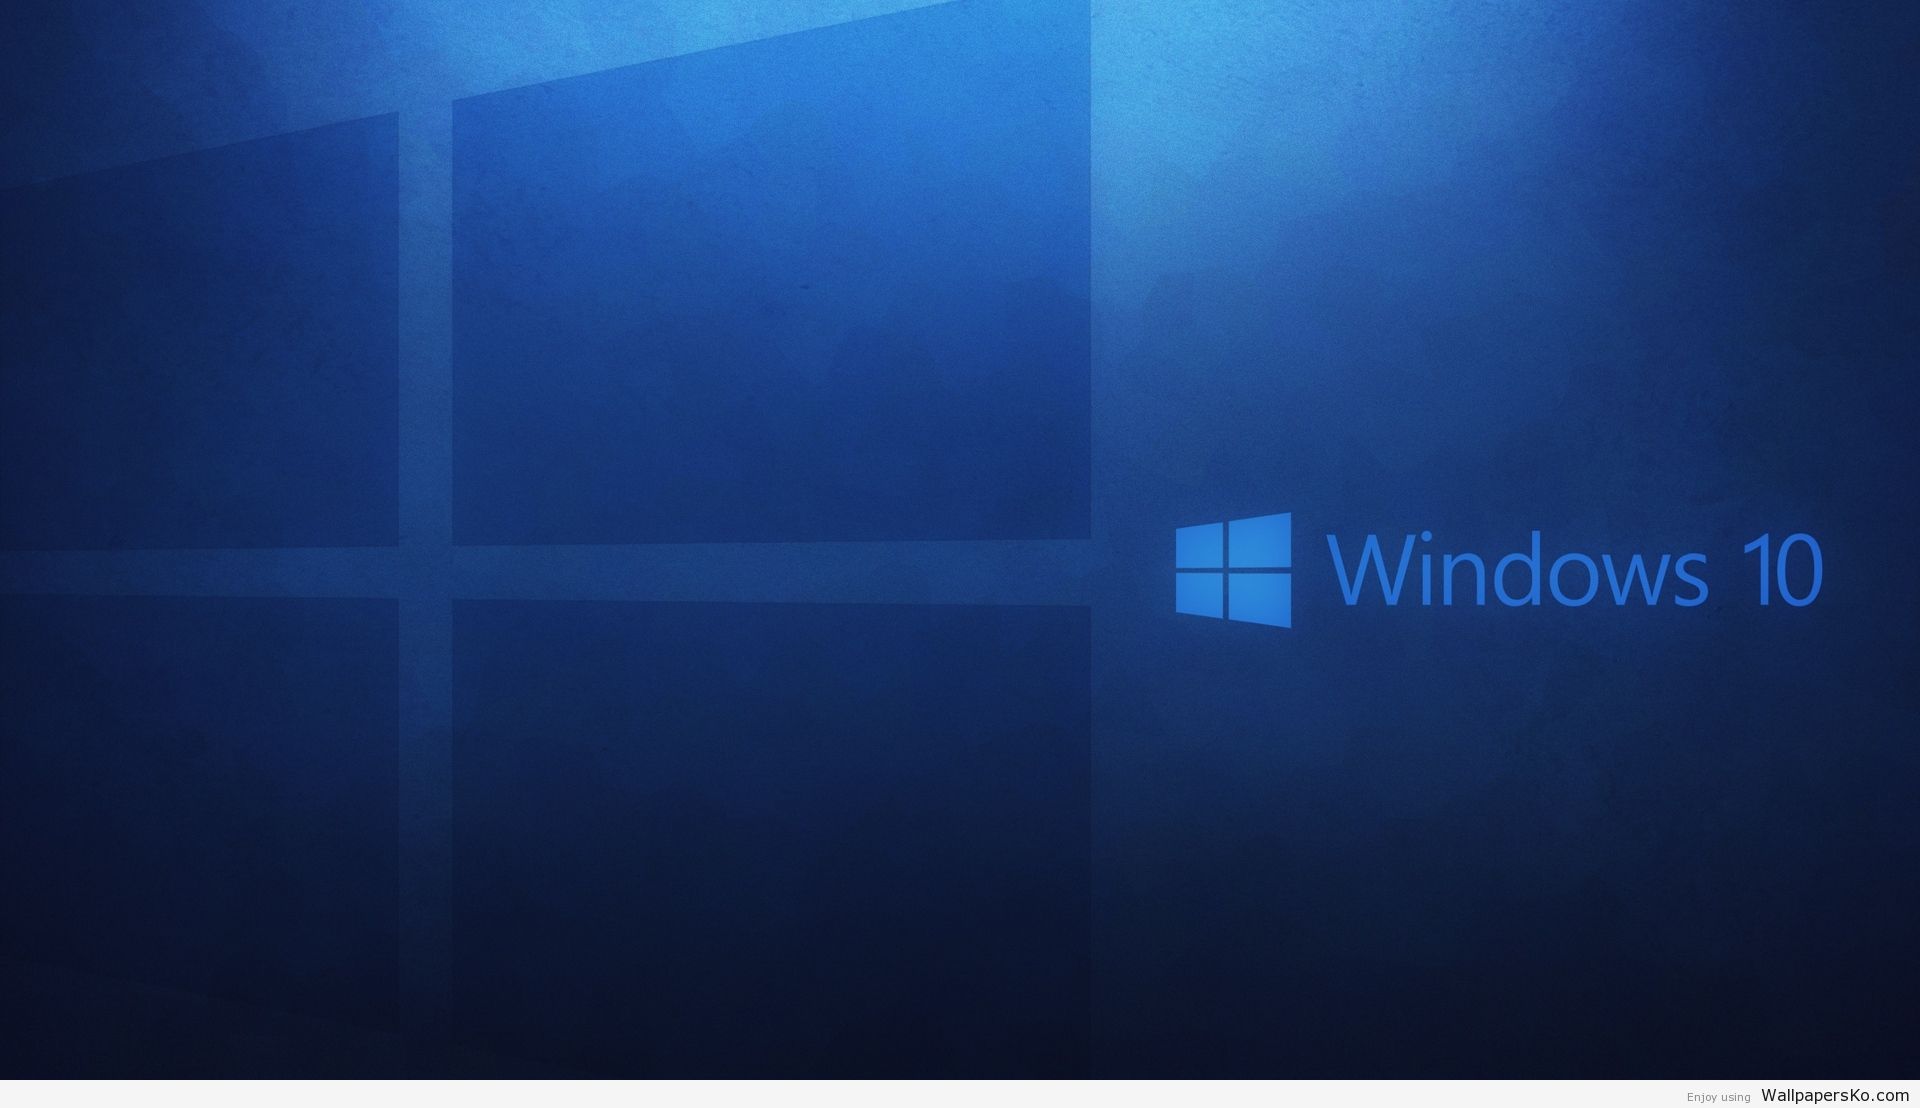 Windows 10 Wallpaper 1920x1080 /windows 10 Wallpaper 1920x1080 HD Wa. Wallpaper Windows Windows 10 Microsoft, Windows Wallpaper